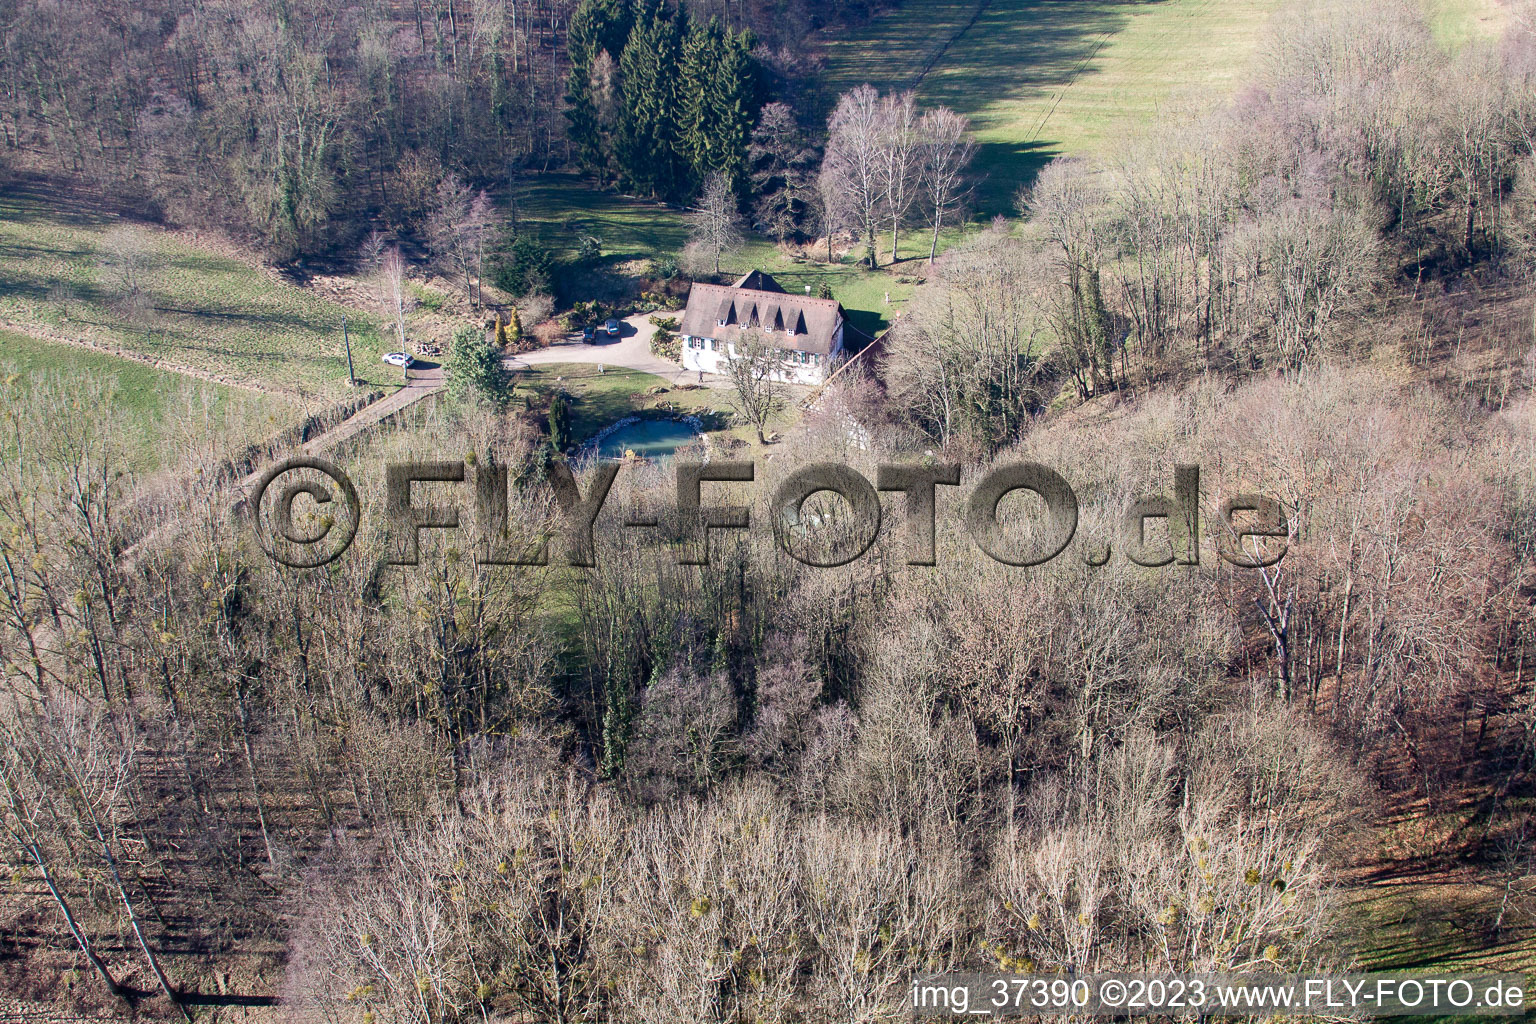 Drachenbronn-Birlenbach dans le département Bas Rhin, France du point de vue du drone